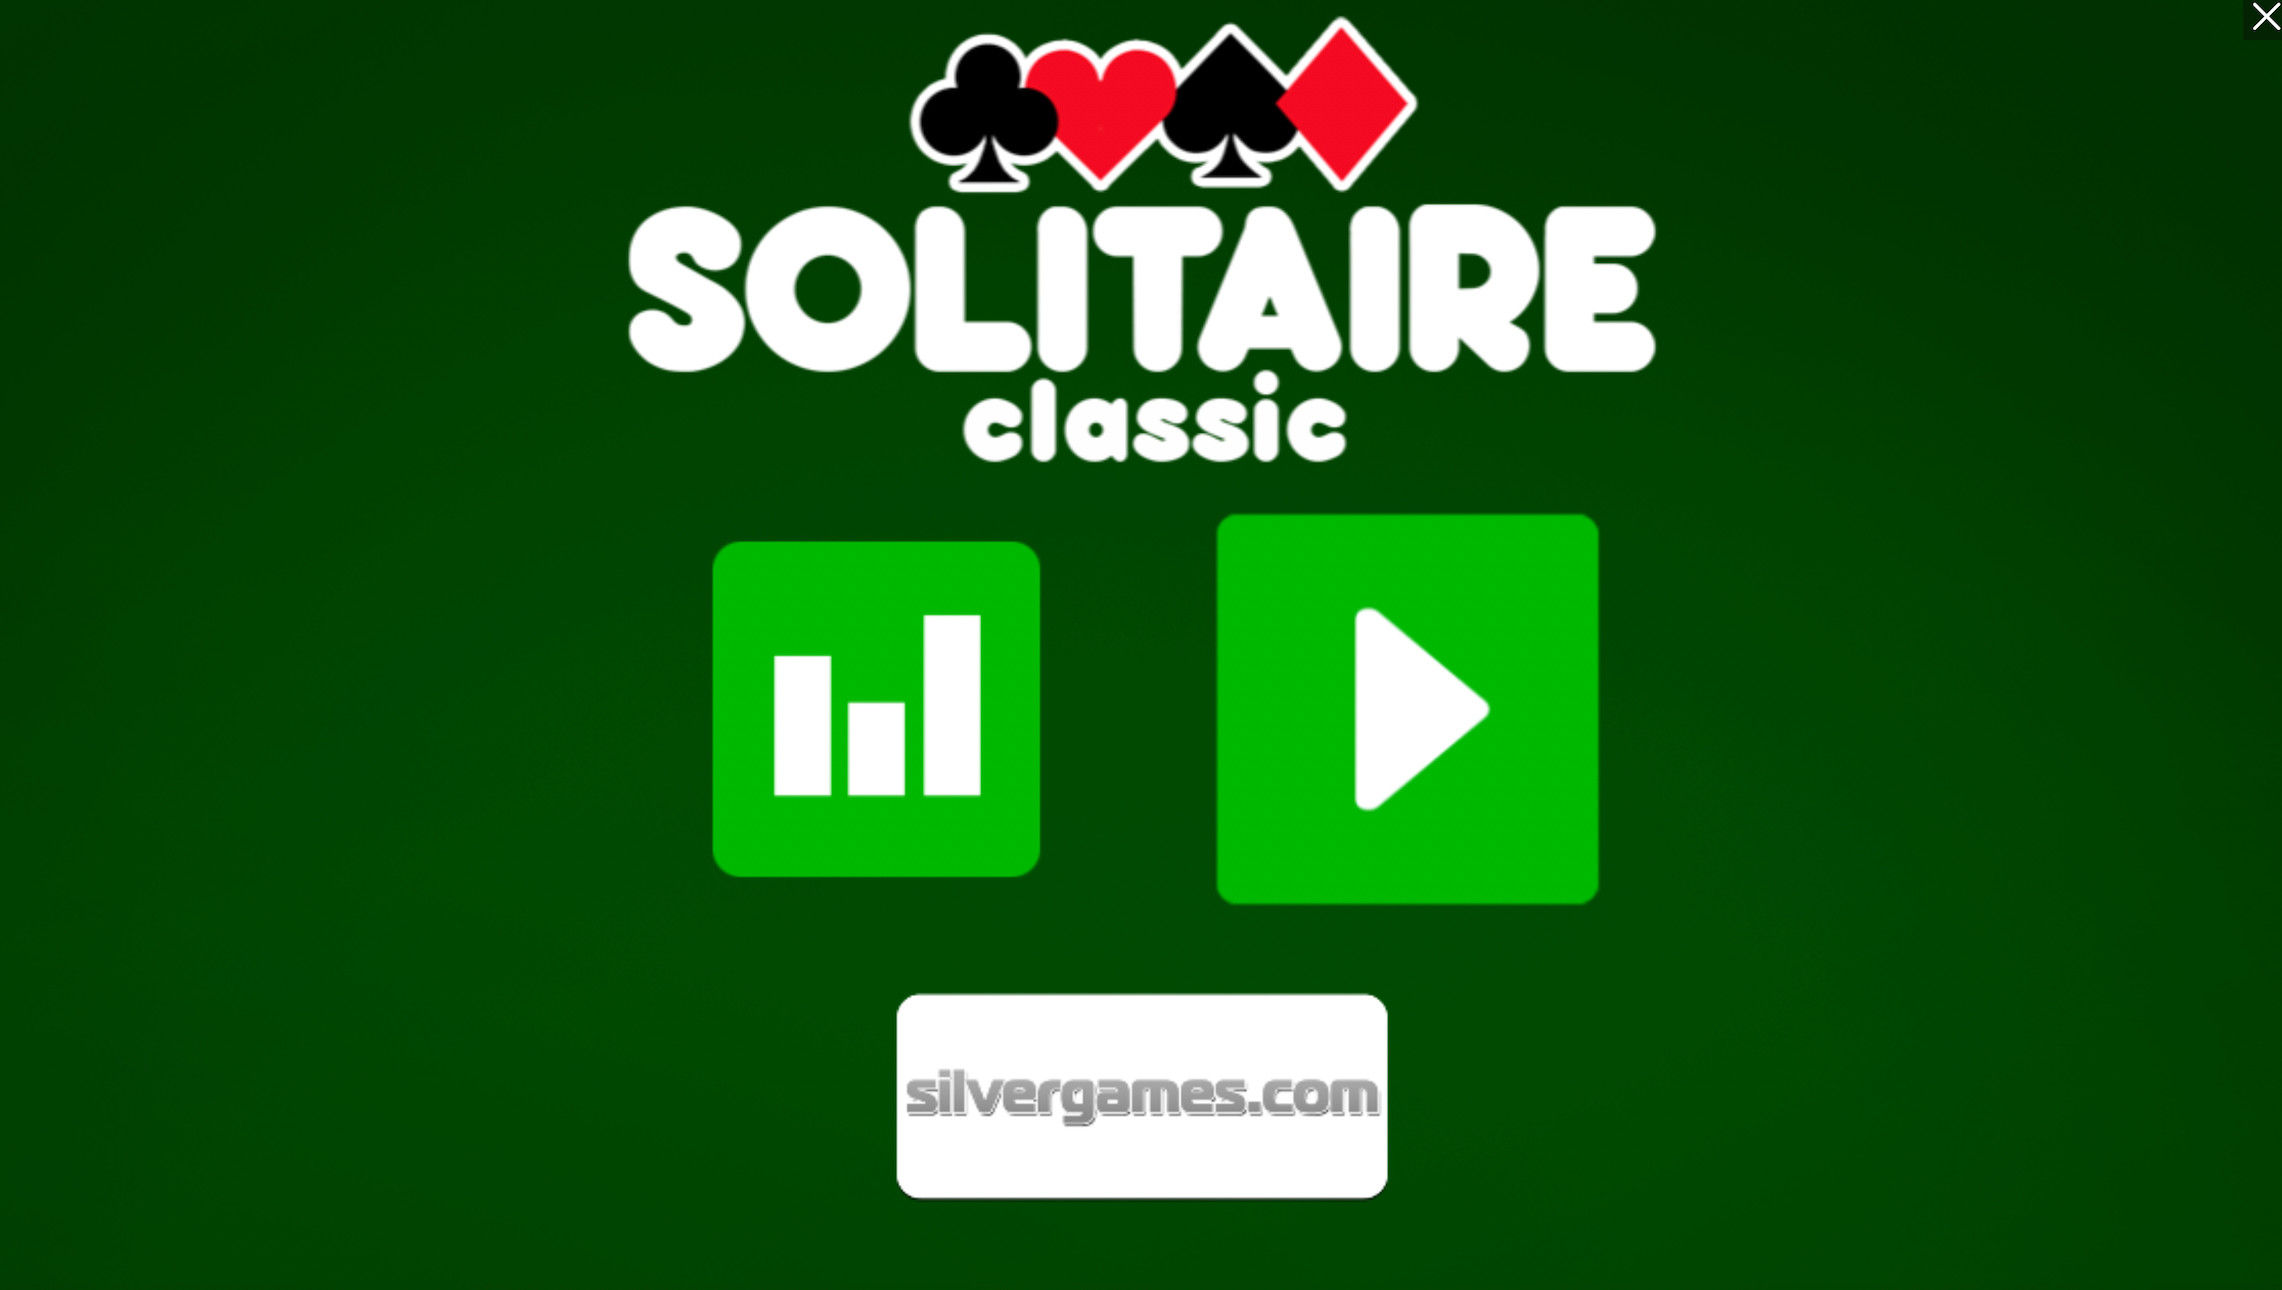 Spider Solitaire 1 2 4 Suits - Jogue Online em SilverGames 🕹